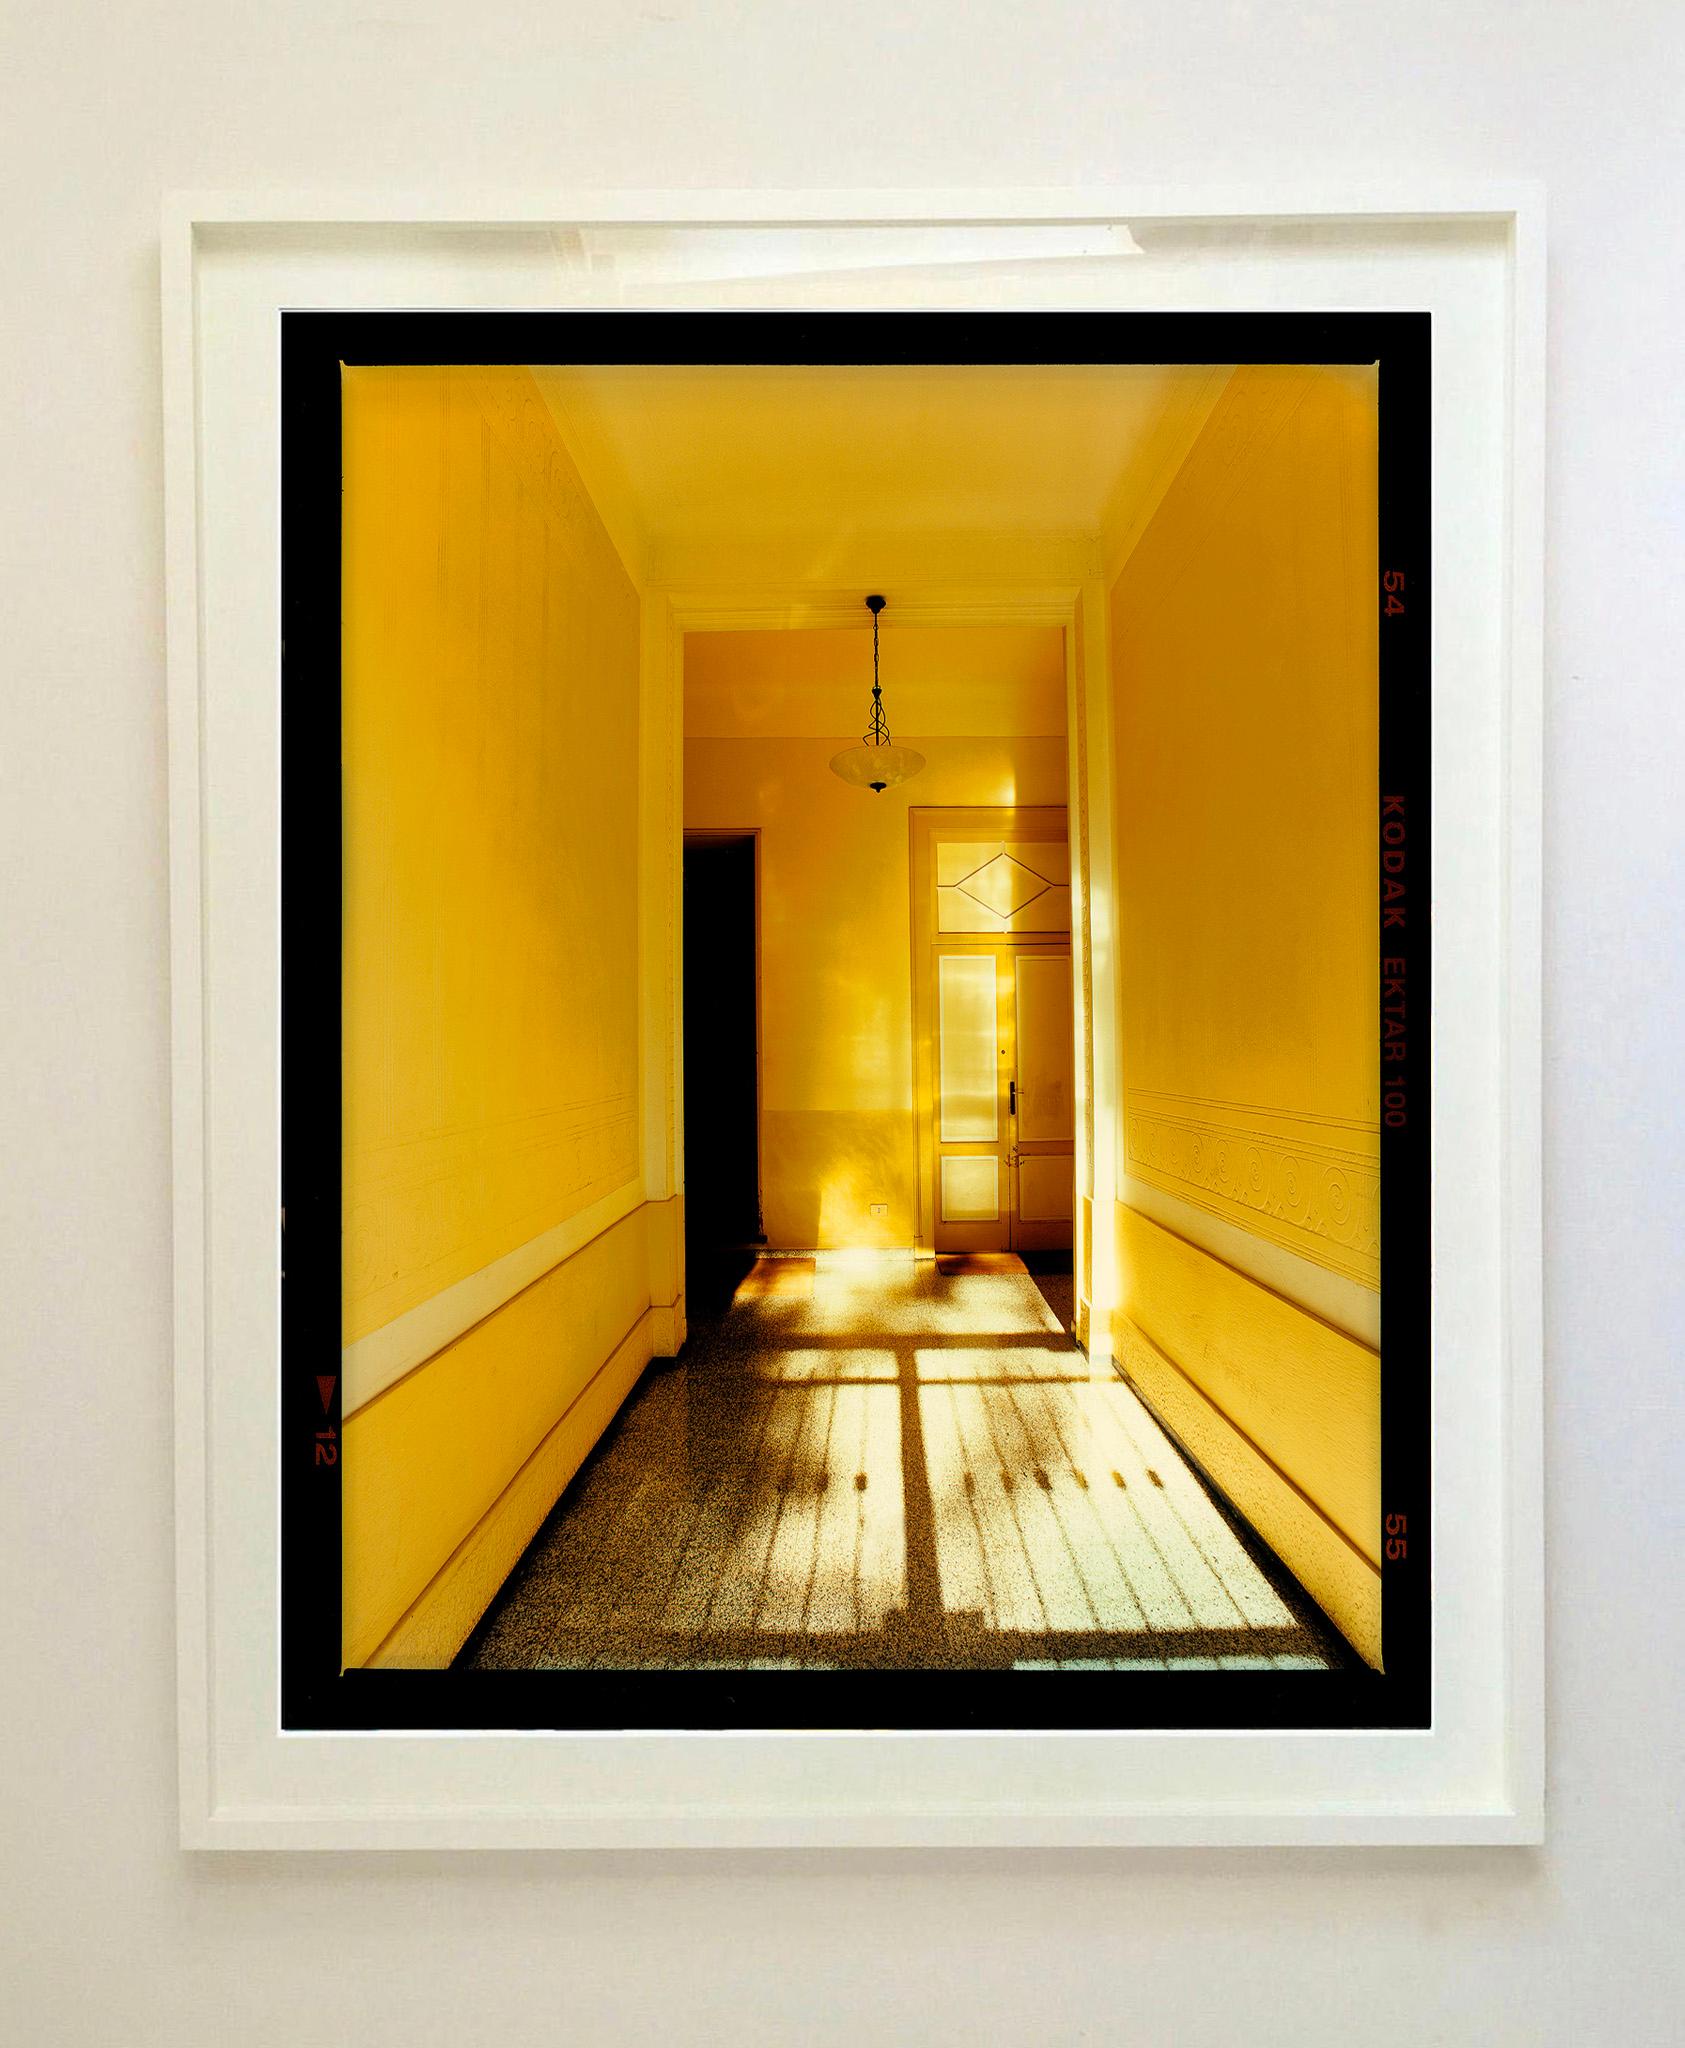 Yellow Corridor (Day), aus Richard Heeps Serie A Short History of Milan, die als Sonderprojekt für die Affordable Art Fair Milan 2018 entstand. Es wurde gut aufgenommen, und das Kunstwerk ist bei Kunstkäufern auf der ganzen Welt beliebt geworden.